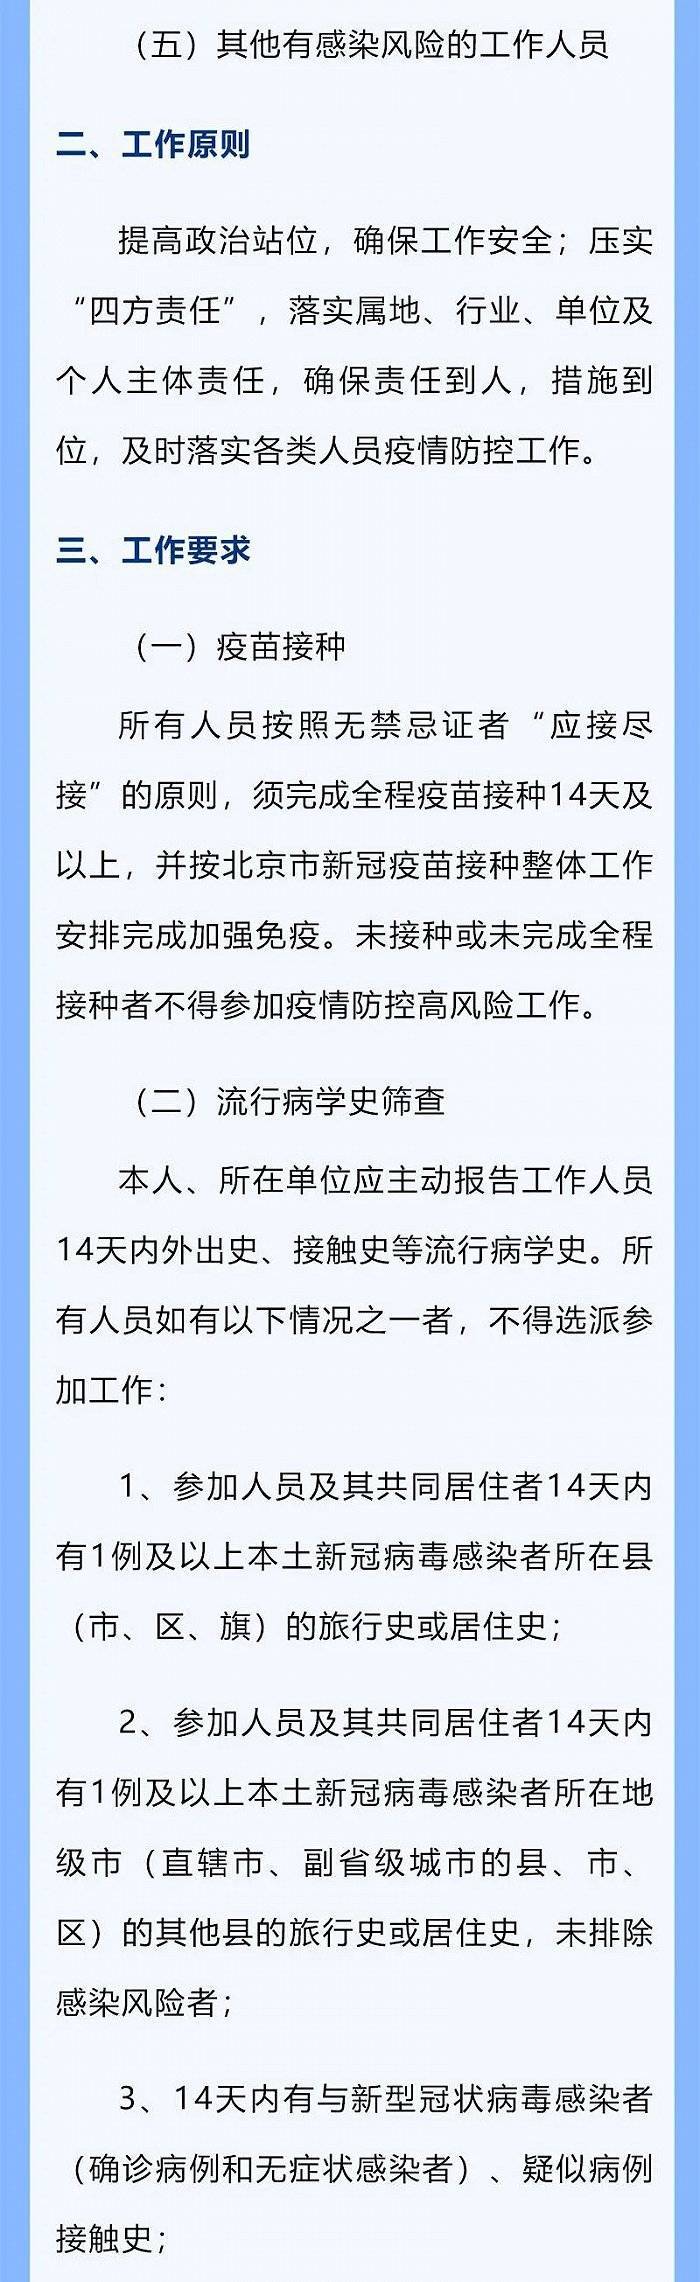 北京市疾控中心发布疫情防控高风险工作人员管理指引